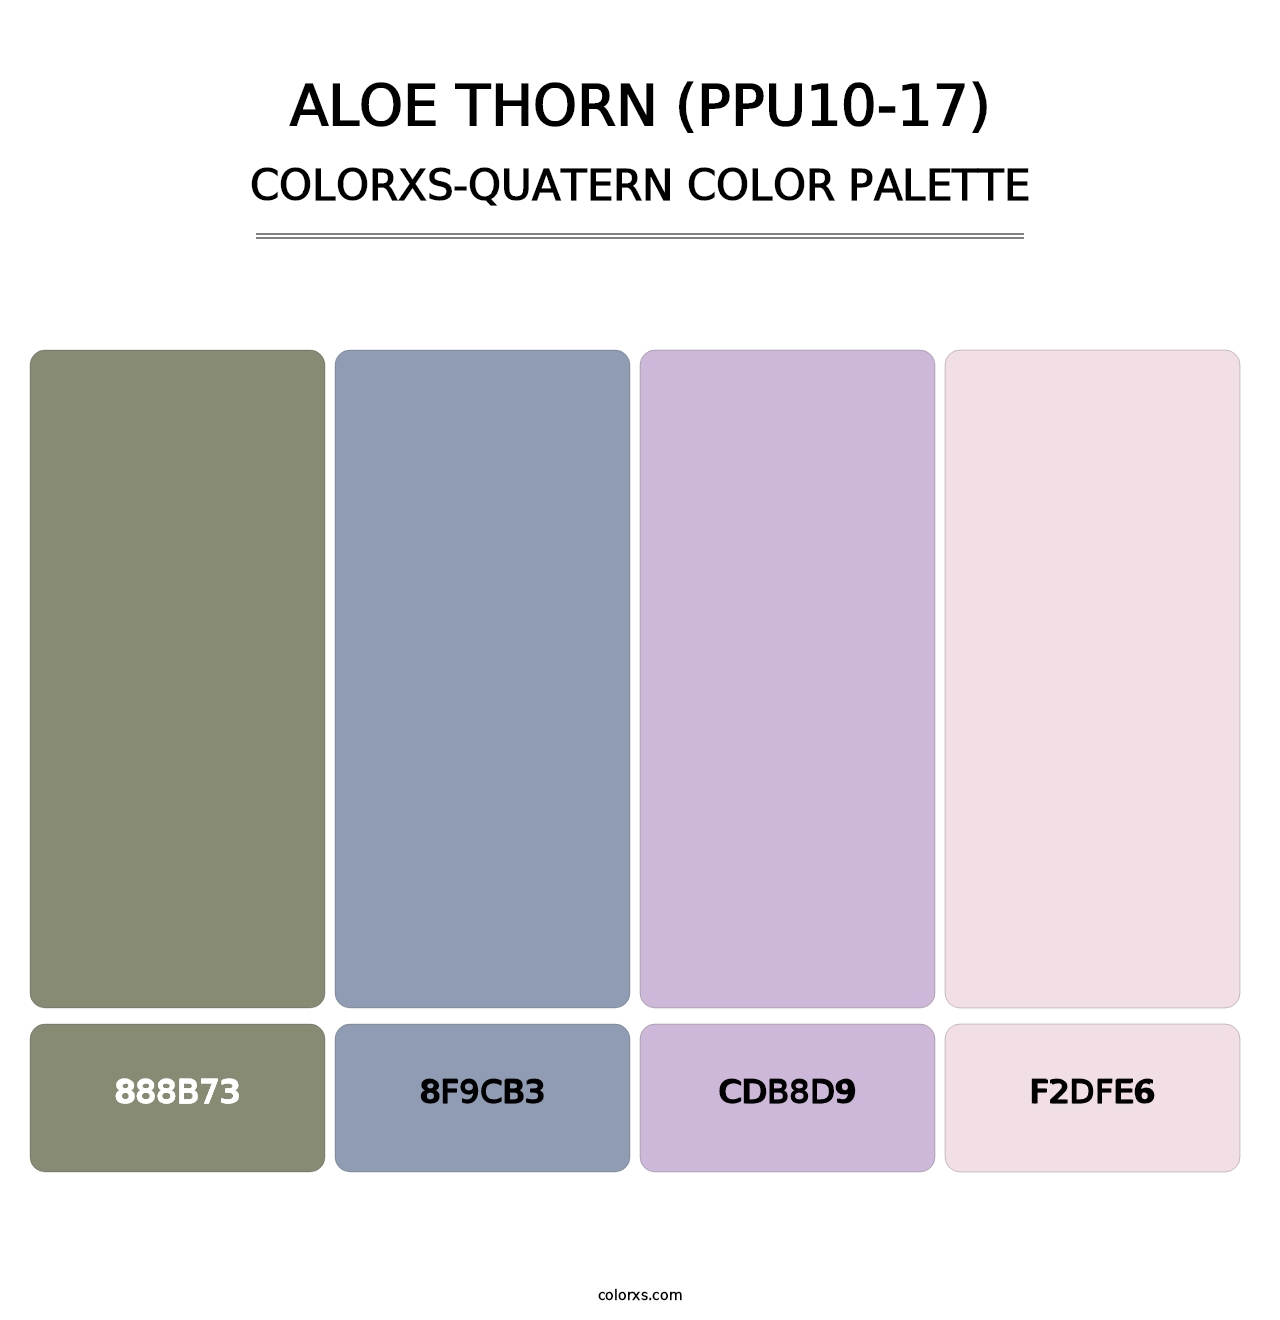 Aloe Thorn (PPU10-17) - Colorxs Quatern Palette